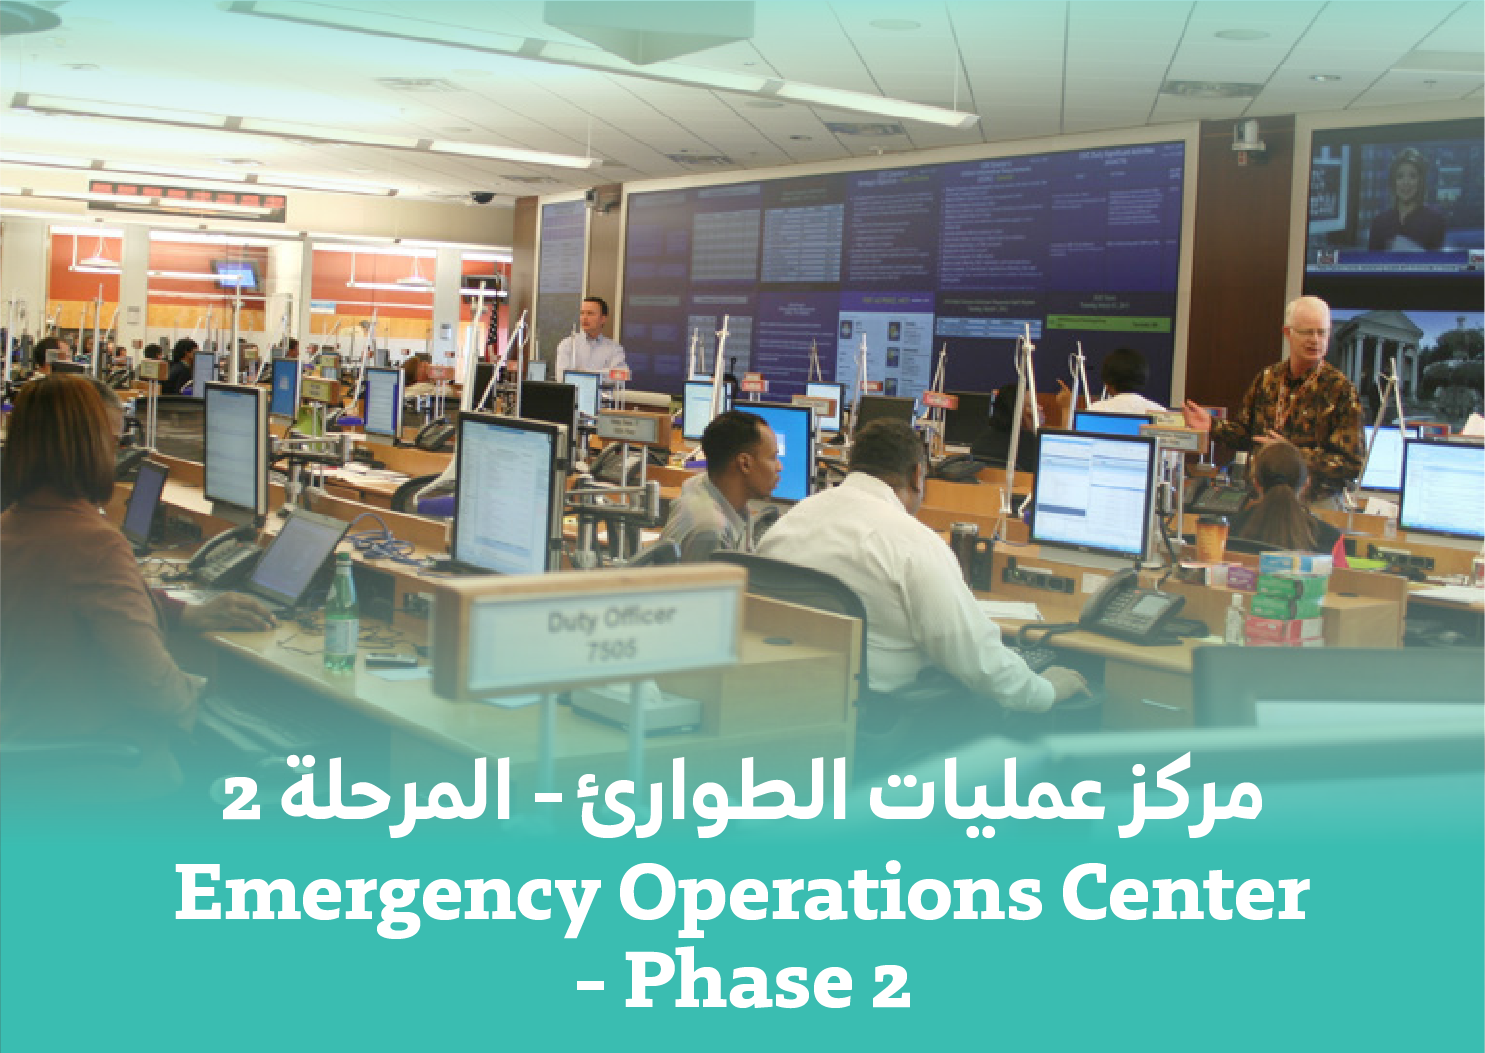 Emergency Operation Center - Phase 2